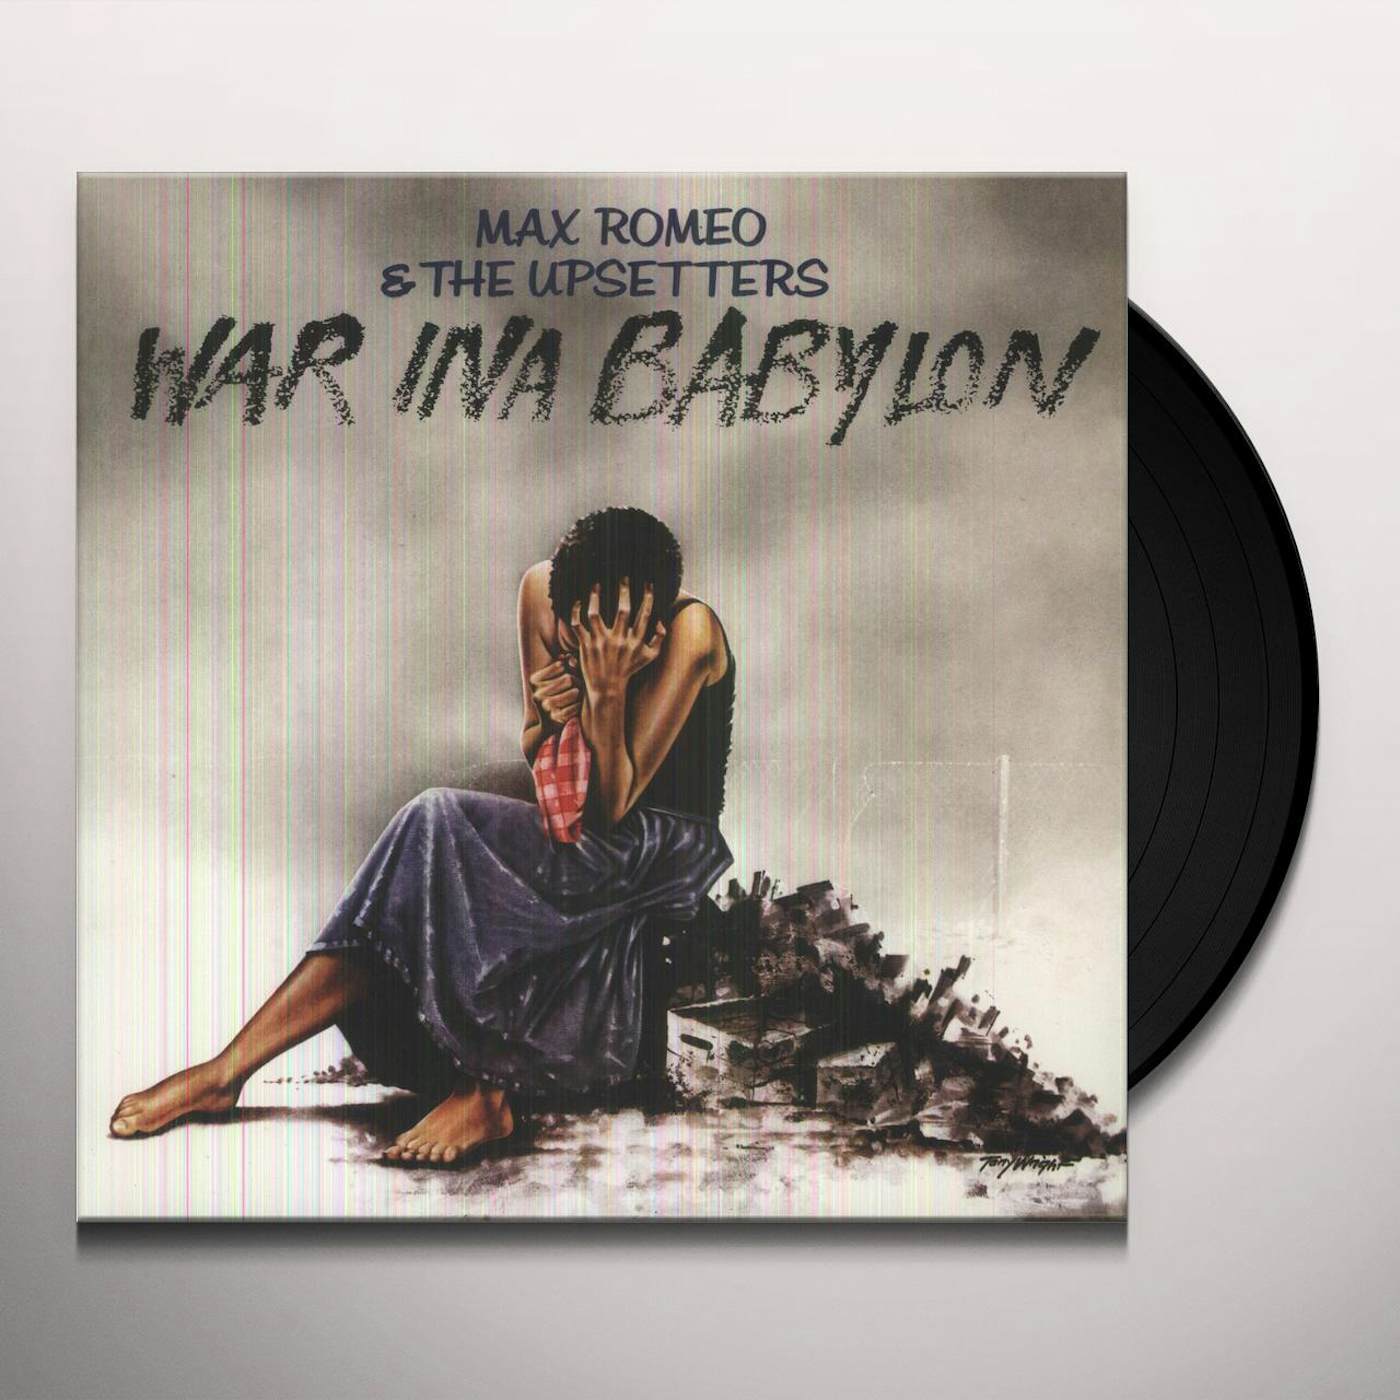 Max Romeo & The Upsetters War Ina Babylon Vinyl Record